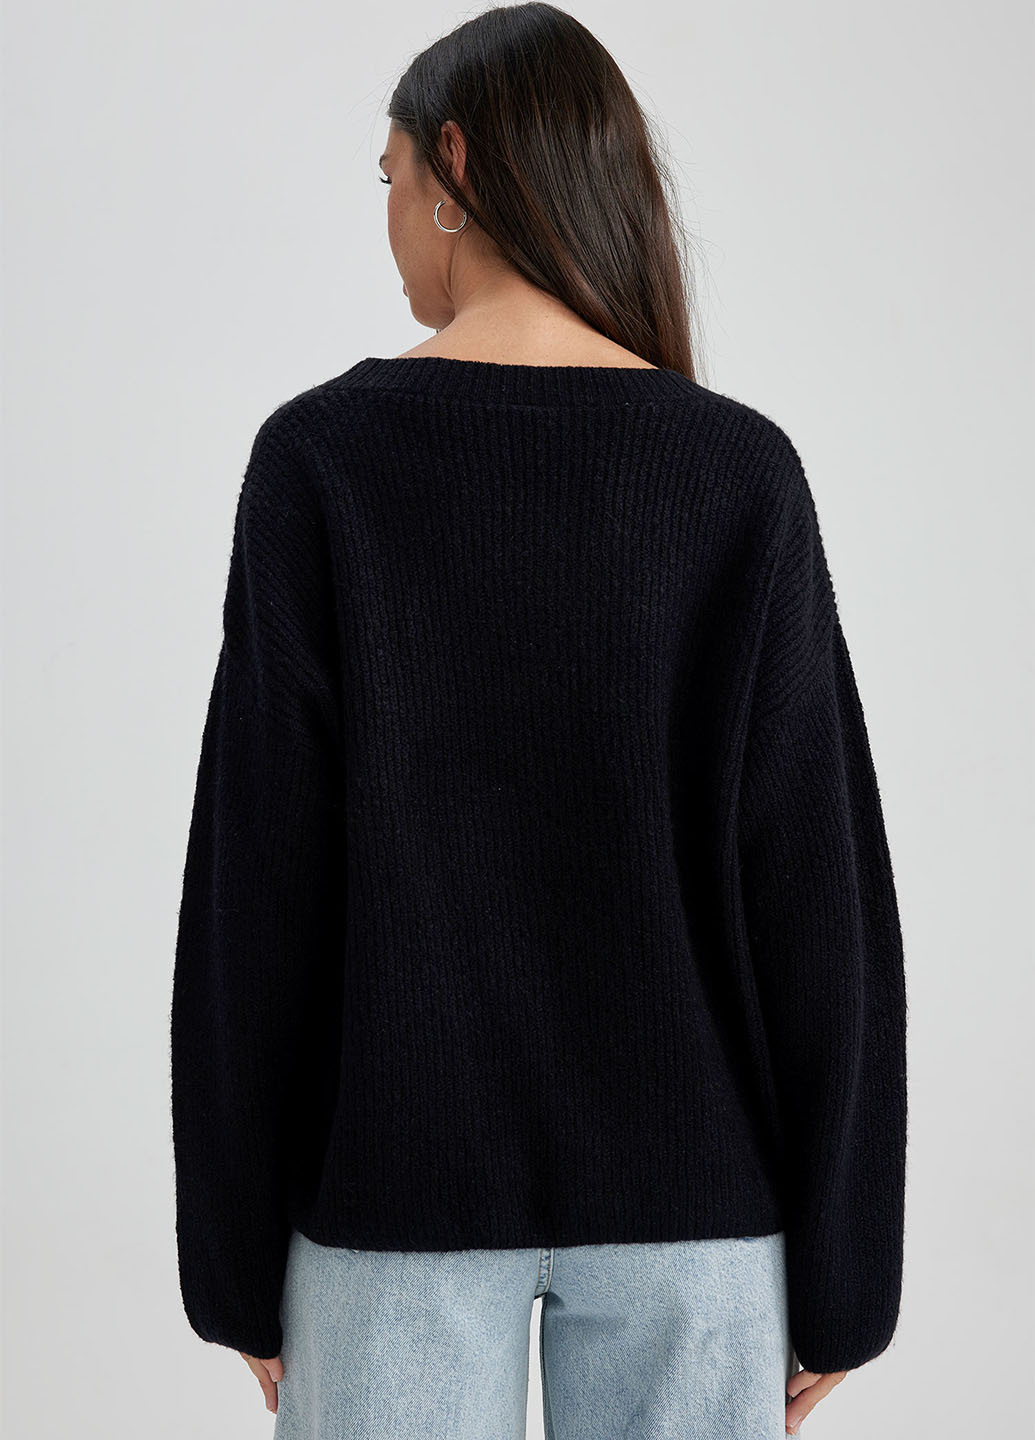 Черный зимний пуловер пуловер DeFacto